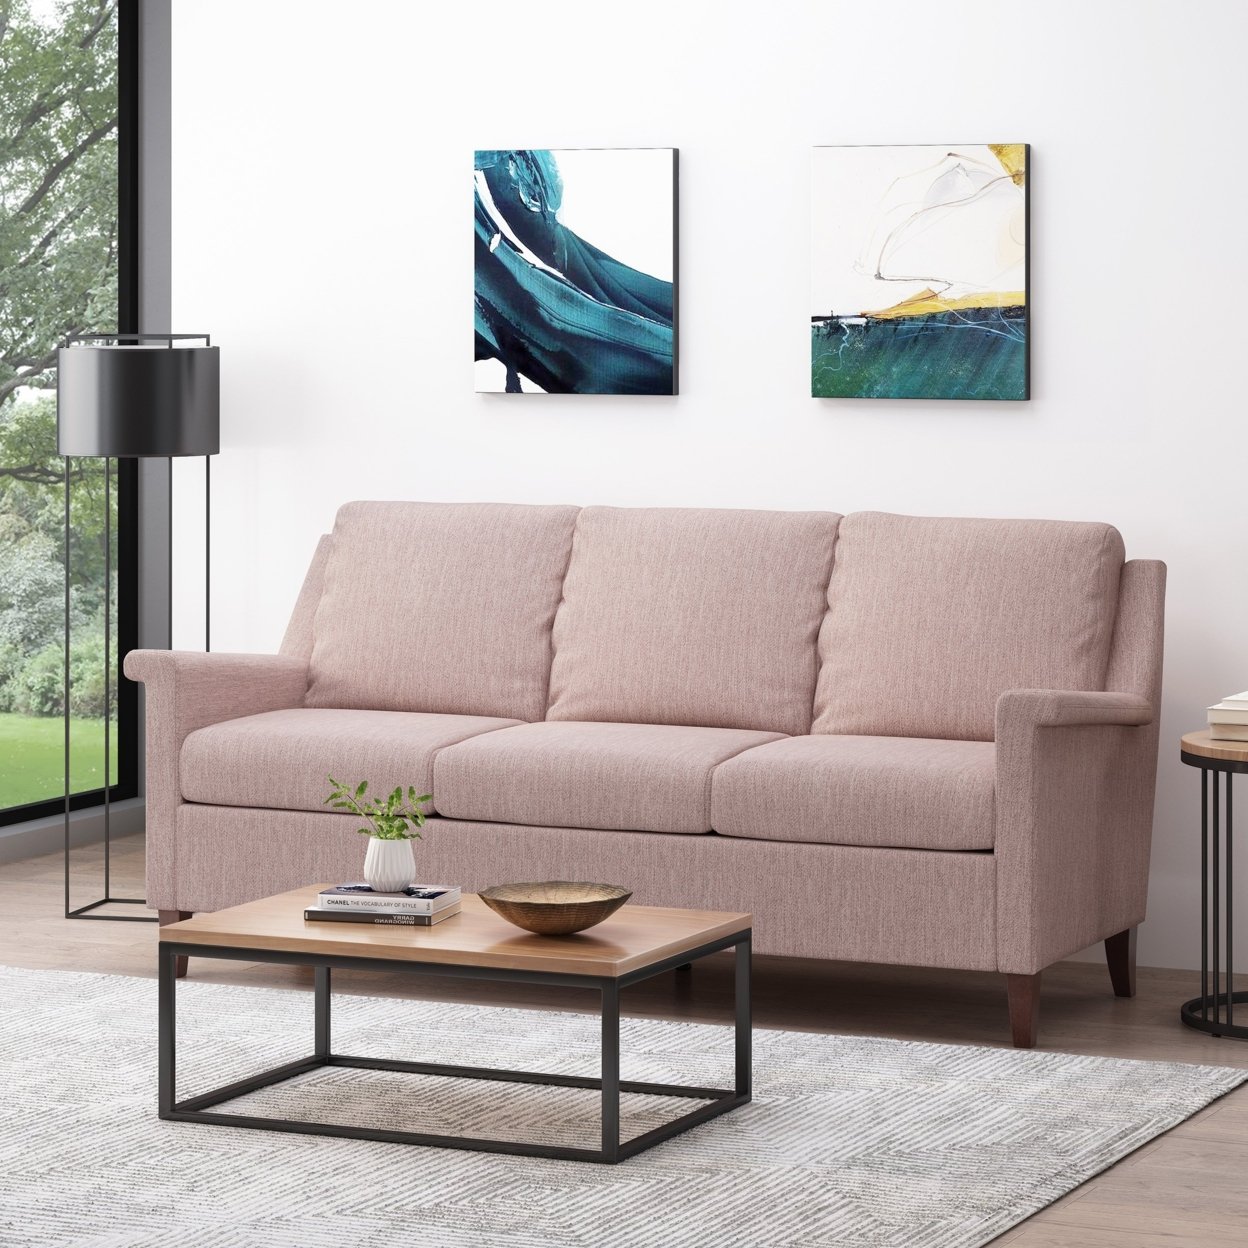 Franz Contemporary 3 Seater Fabric Sofa - Light Blush/espresso